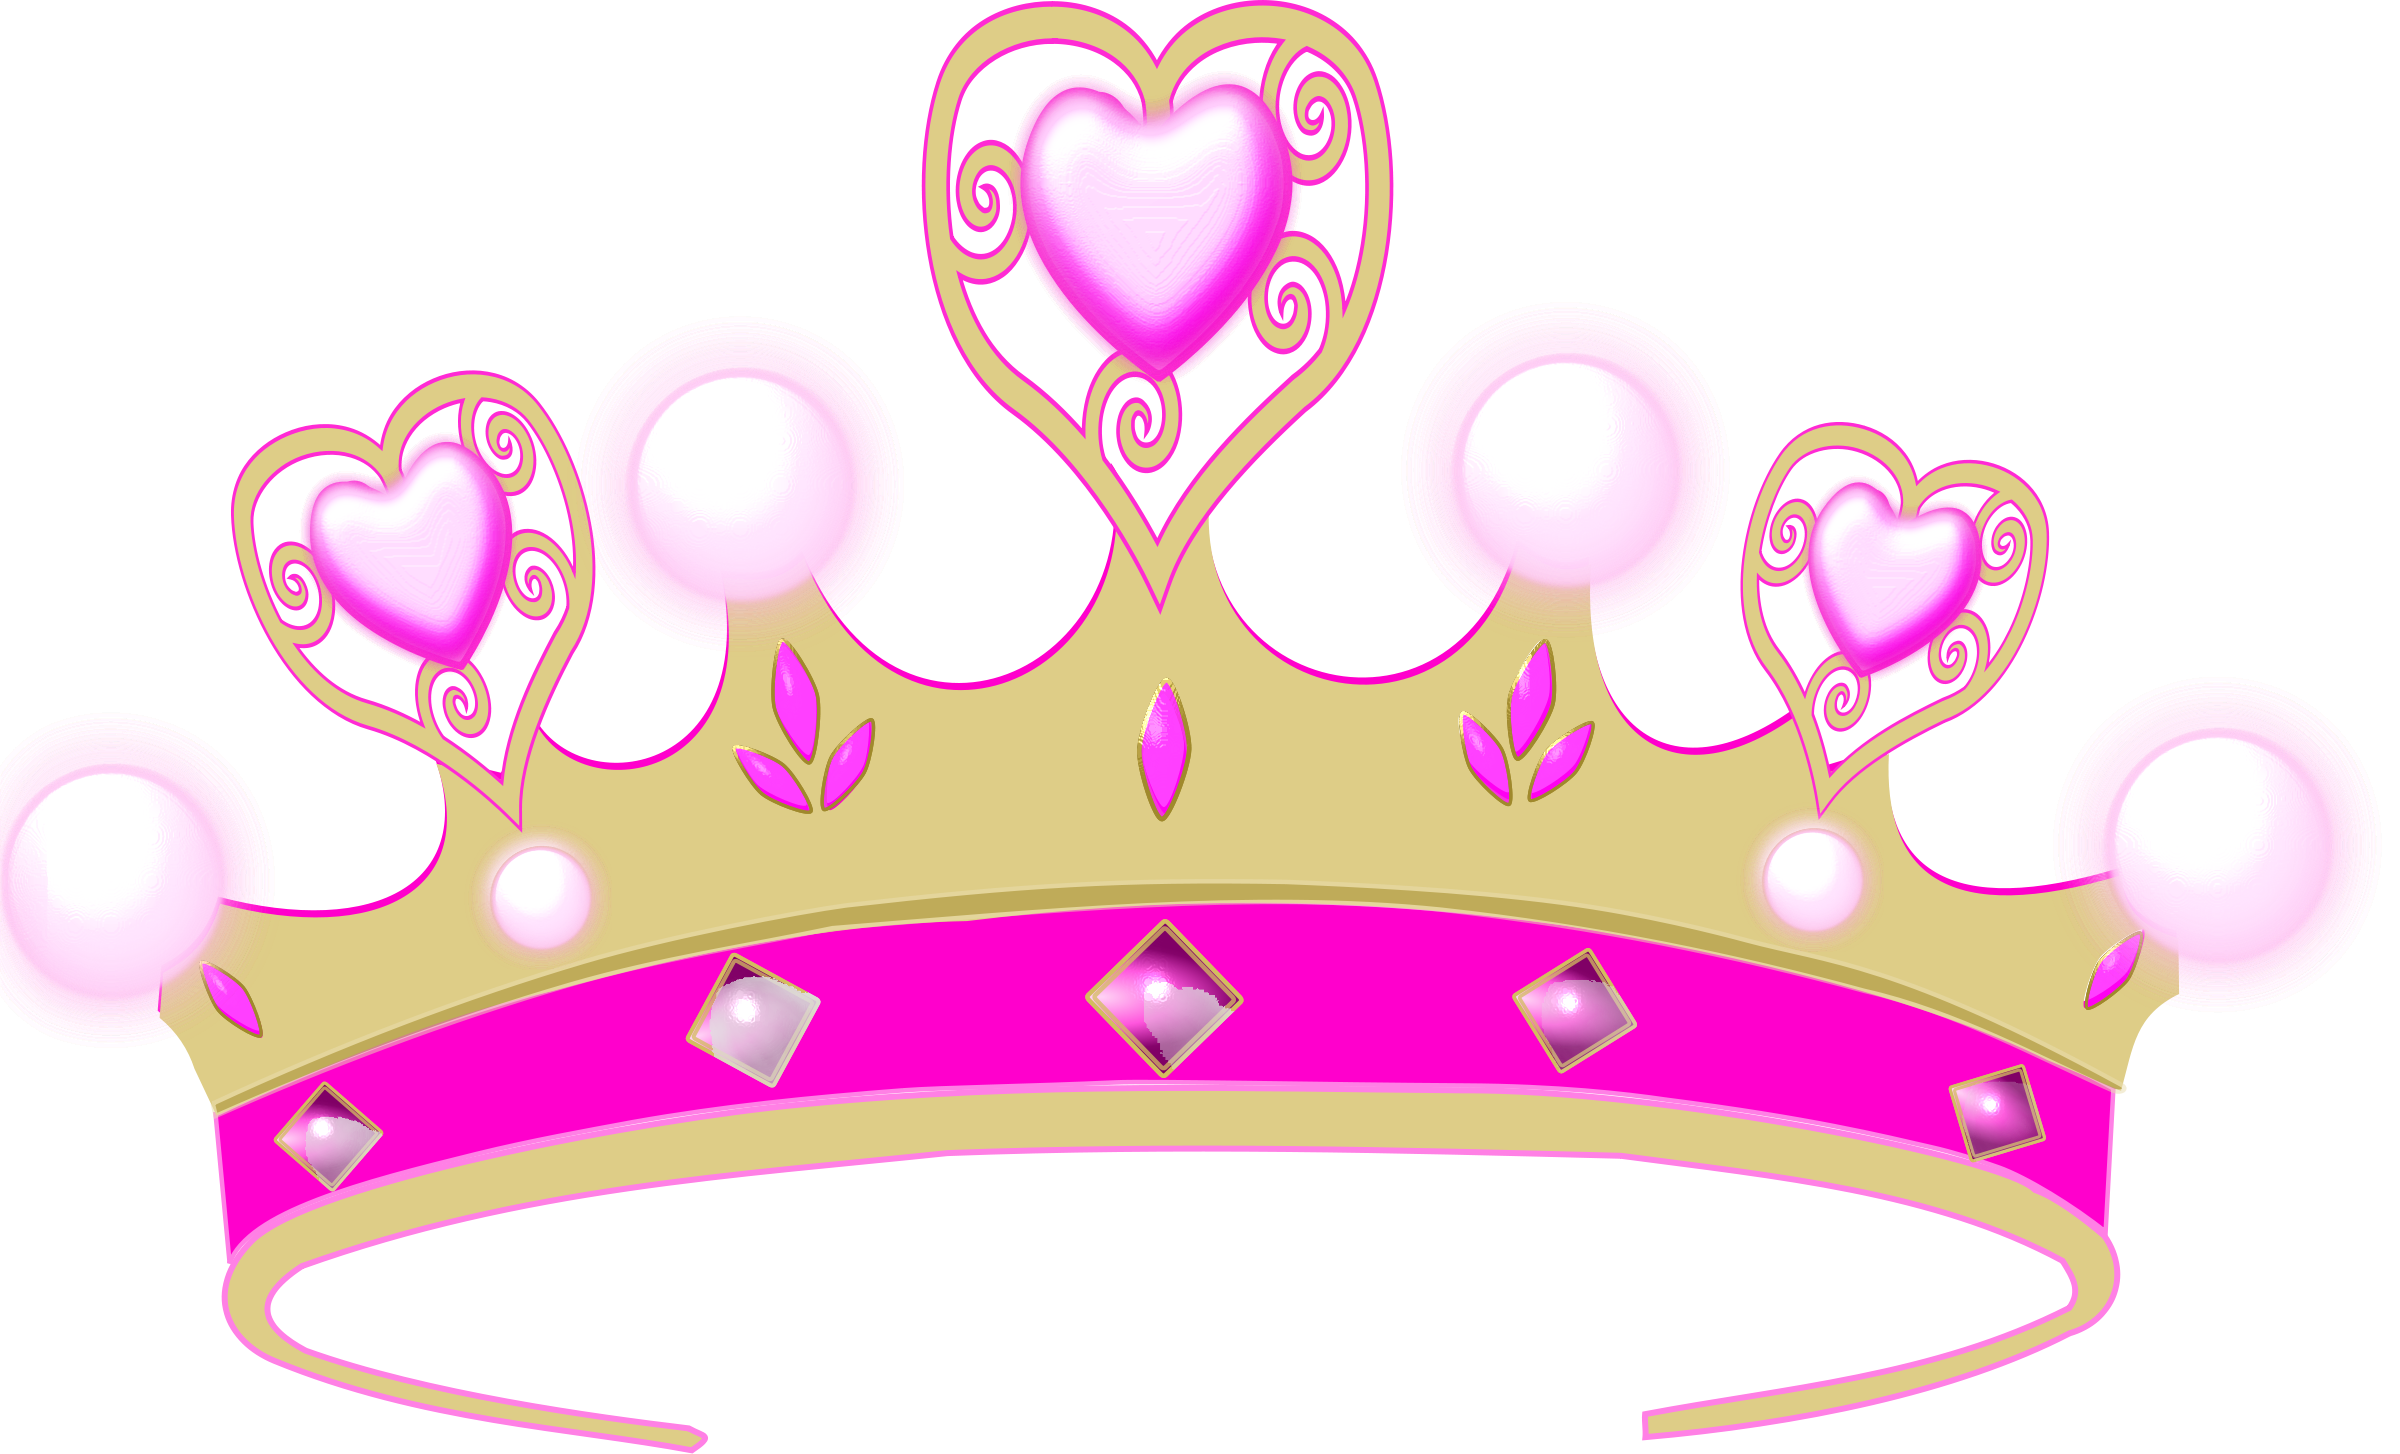 pink-crown-princess-crown-904